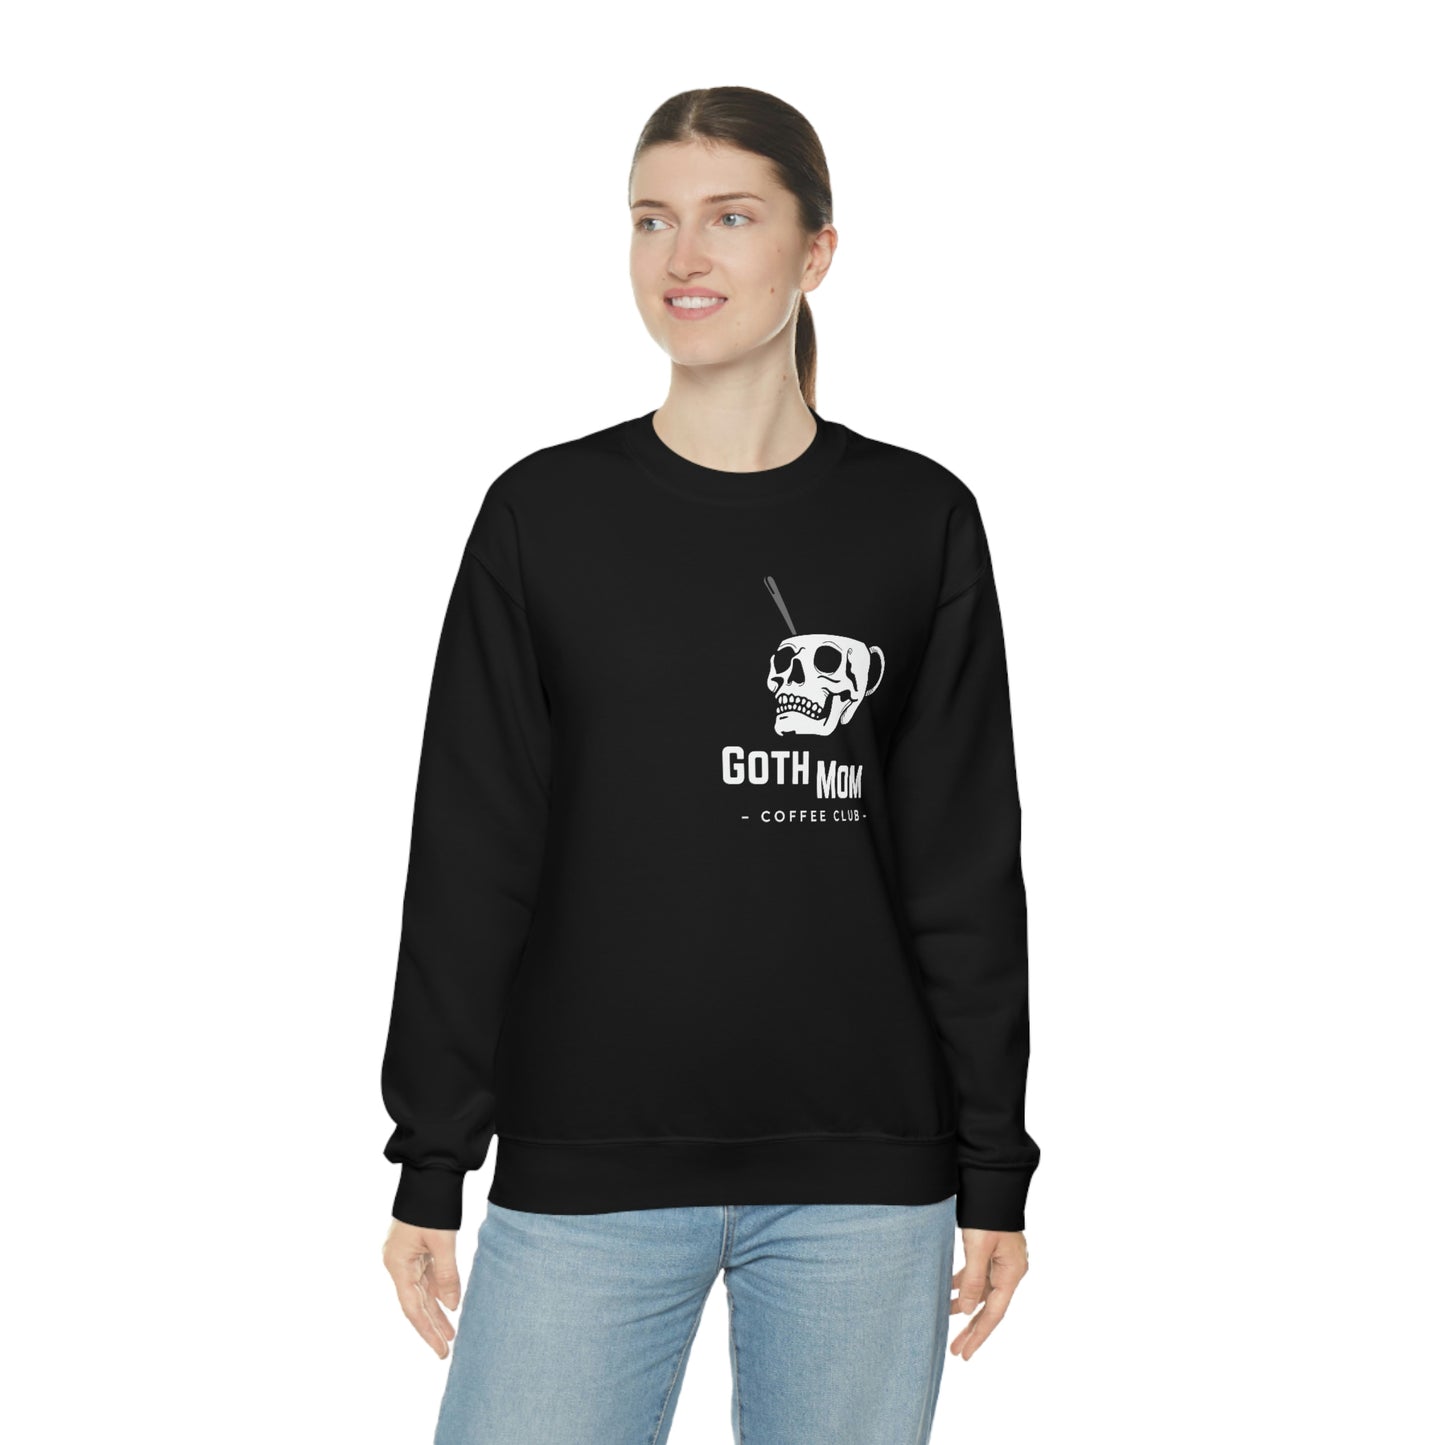 BLACK - Goth Mom Coffee Shop Unisex Crewneck Sweatshirt